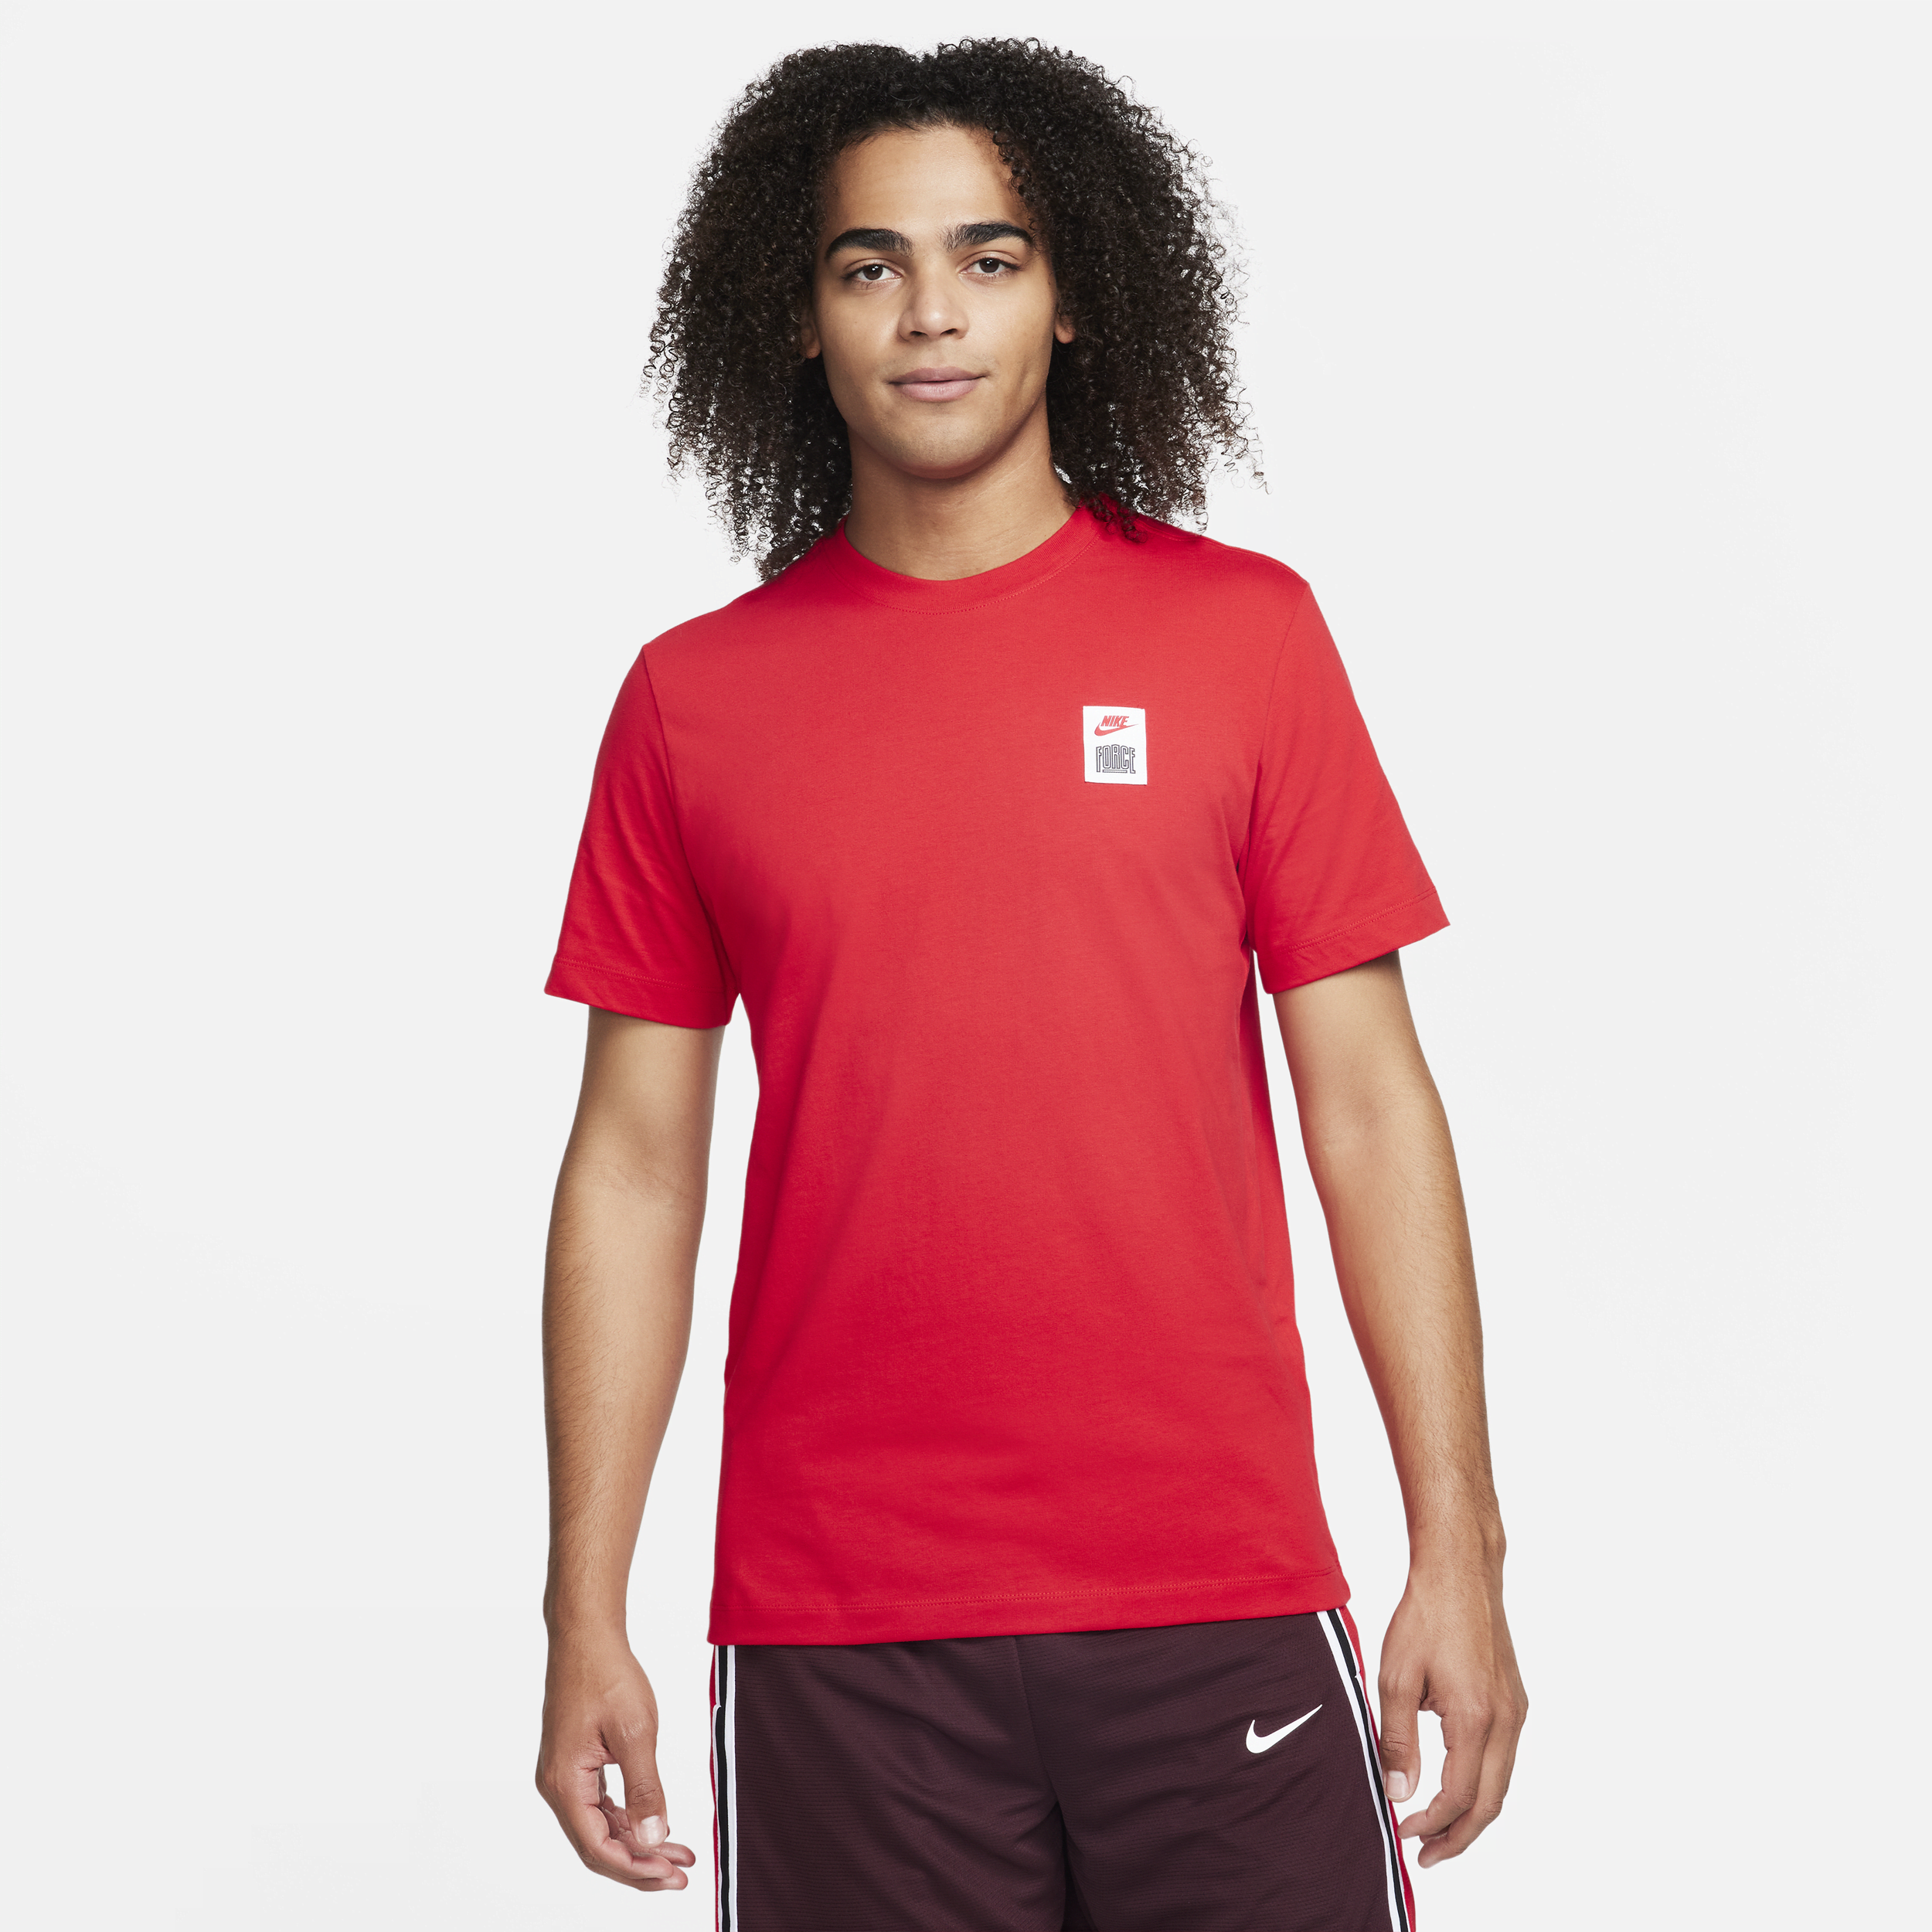 Nike Men's Basketball T-shirt In University Red